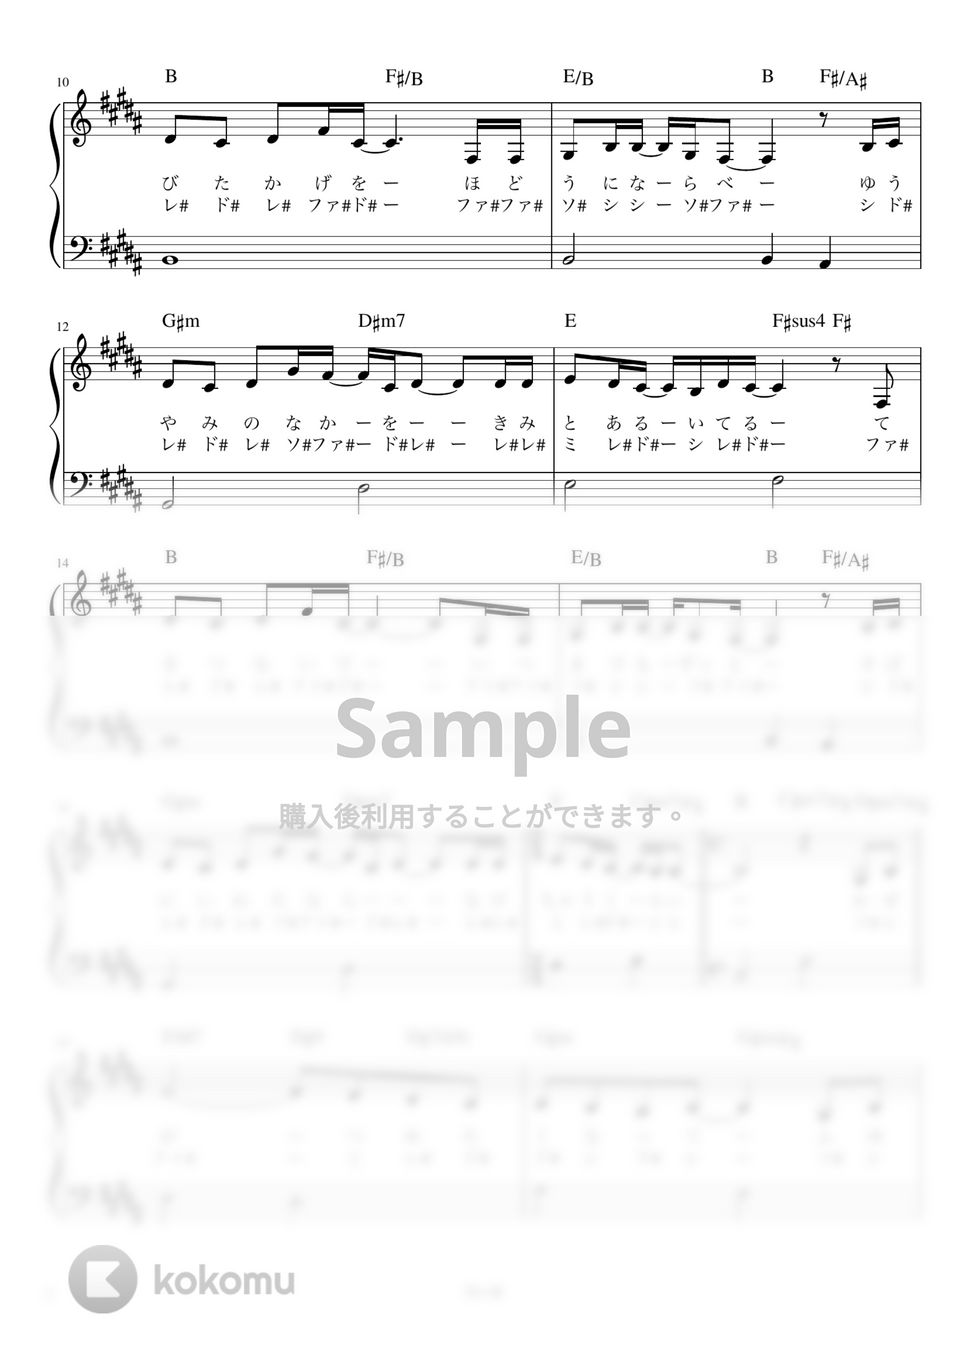 中島美嘉 - 雪の華 (かんたん 歌詞付き ドレミ付き 初心者) by piano.tokyo